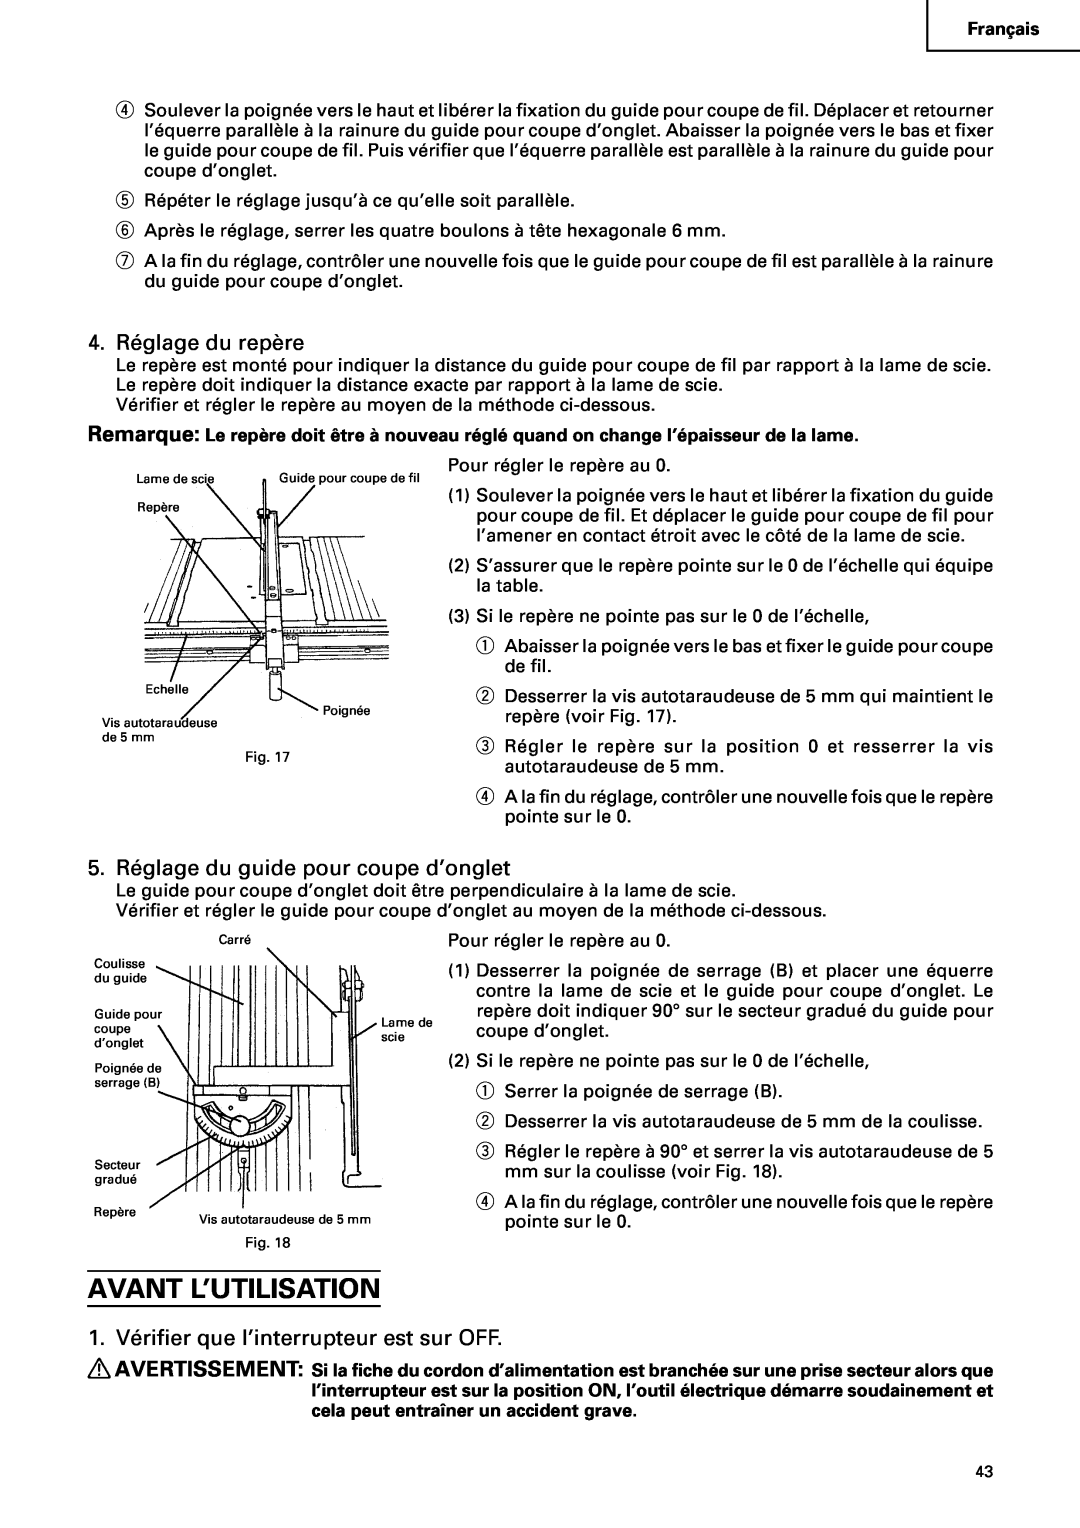 Hitachi C10RA2 instruction manual Avant L’Utilisation, 4. Réglage du repère, 5. Réglage du guide pour coupe d’onglet 